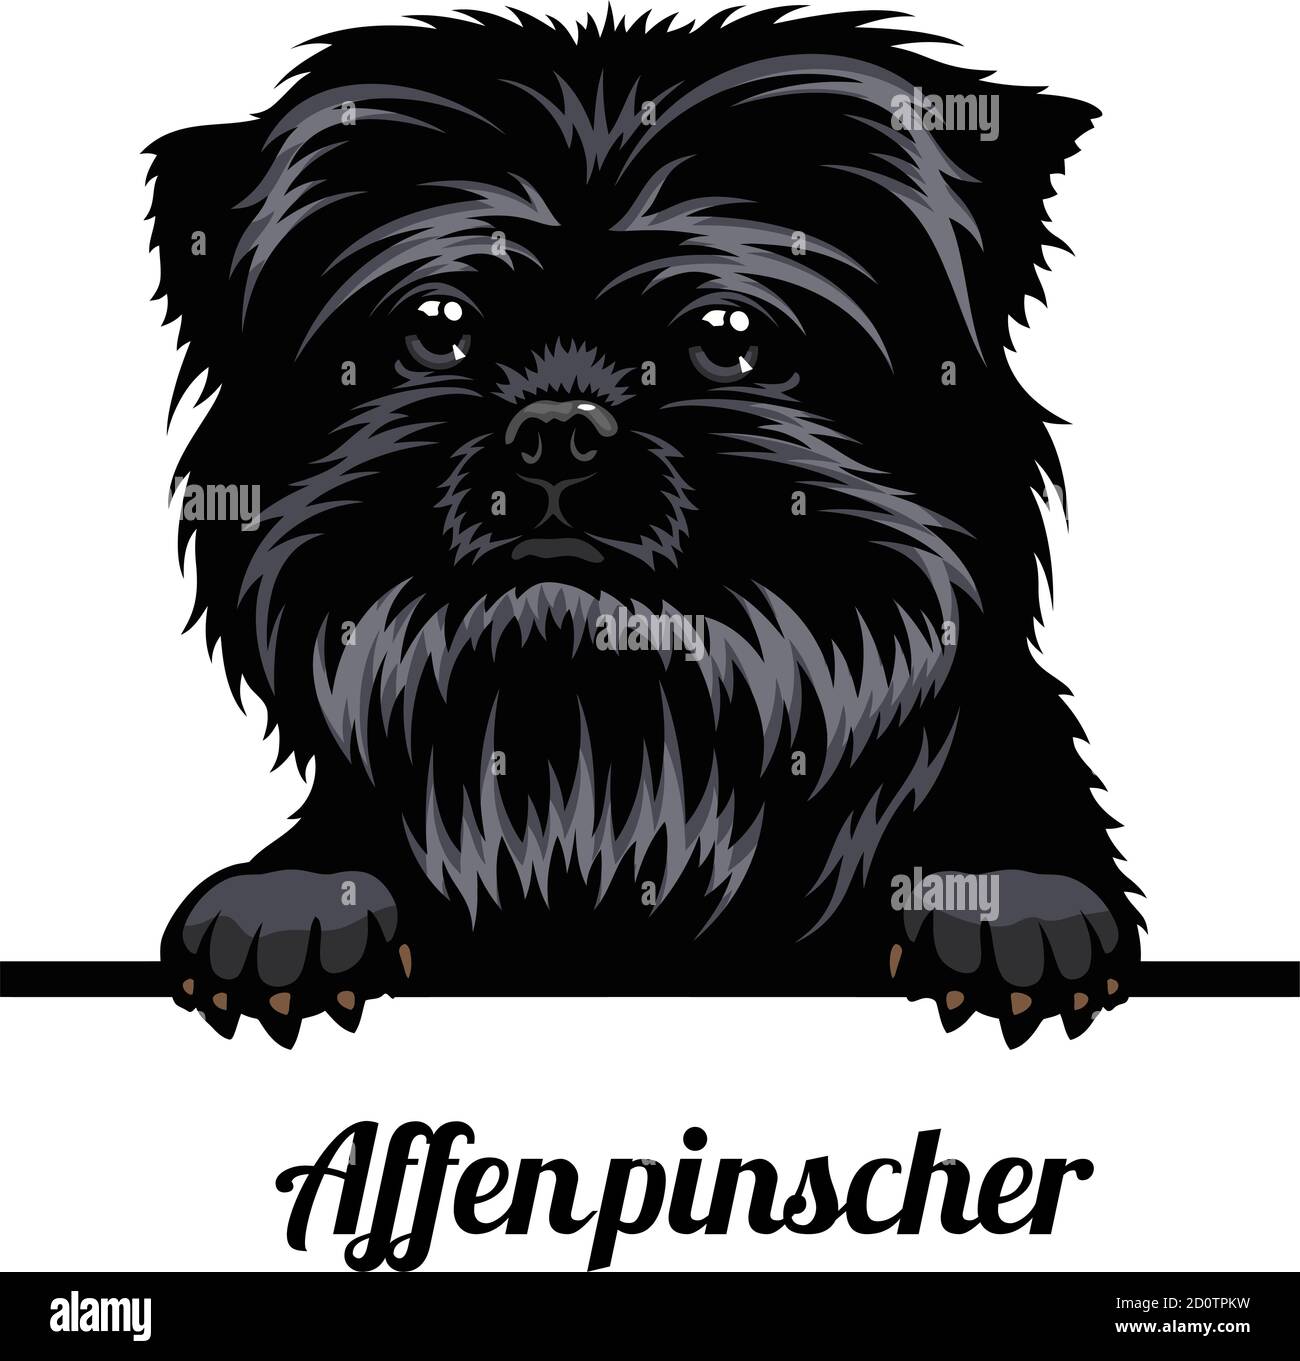 Testa AffenPinscher - razza del cane. Immagine a colori di una testa di cani isolata su uno sfondo bianco Illustrazione Vettoriale